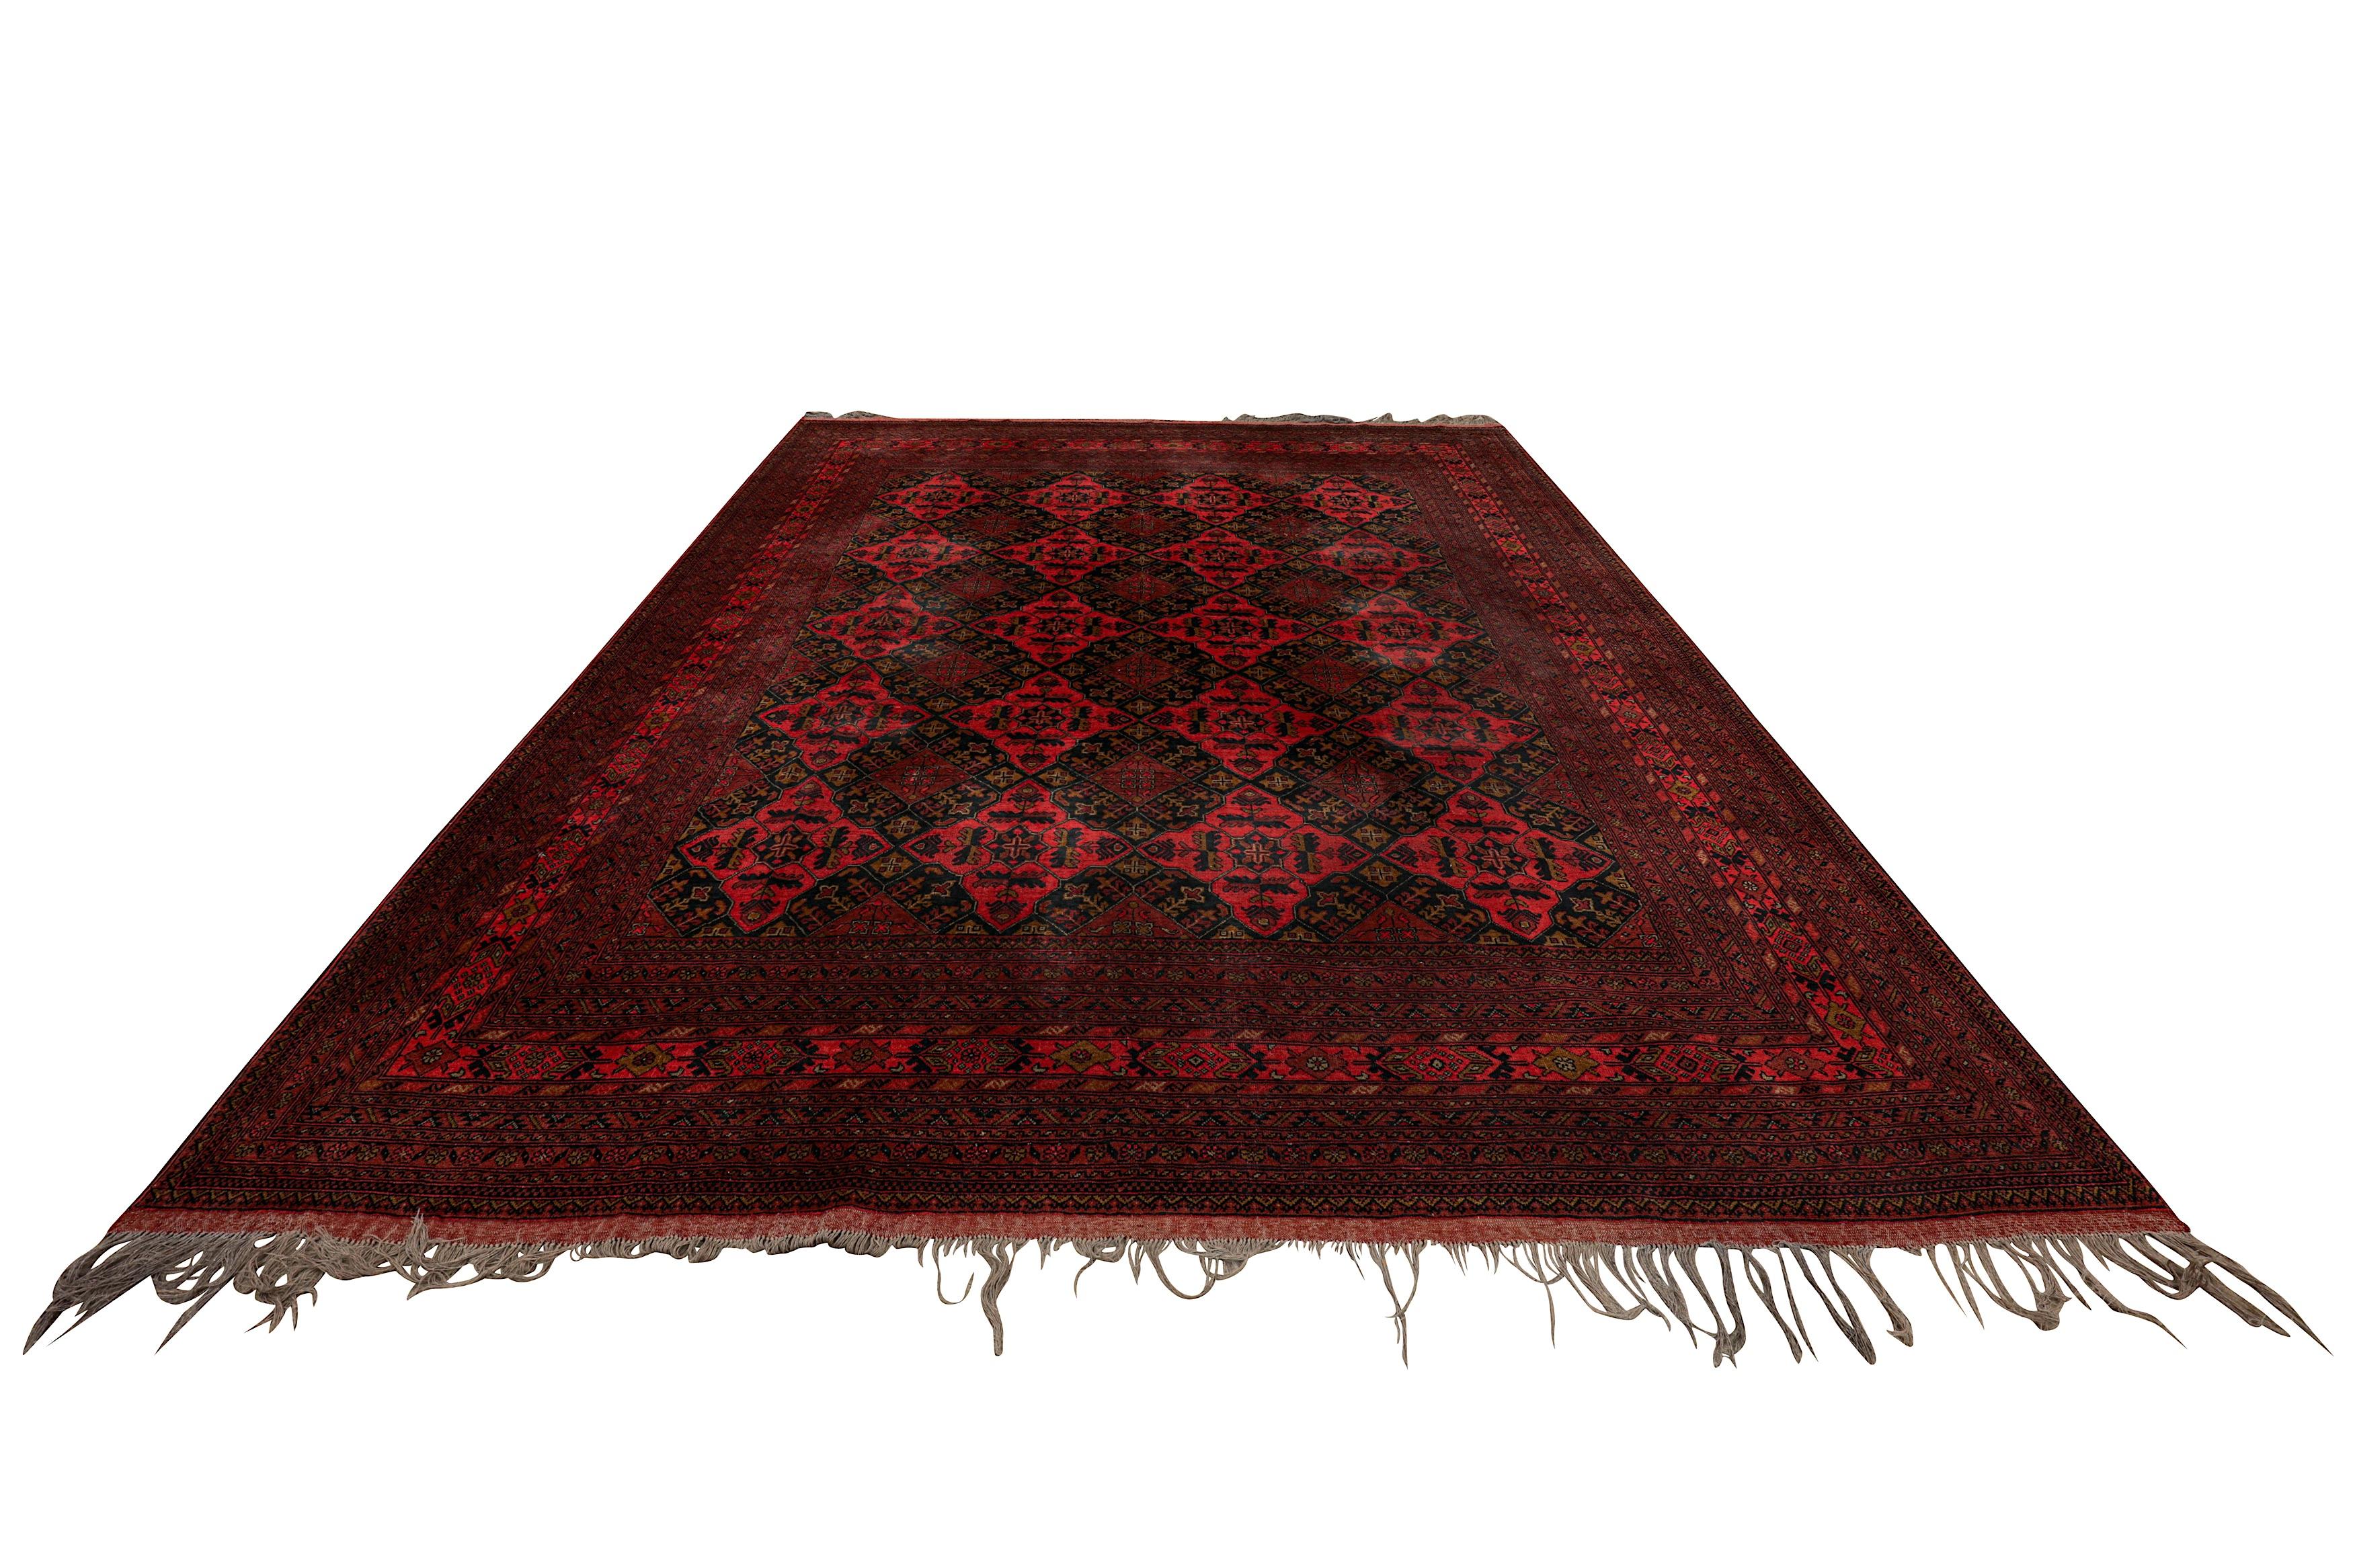 Mid Century Hand geknüpft Afghan Khan Wolle Teppich 13ft x 10ft

EIN AFGHANISCH-TURKMENISCHER TEPPICH
C.1940
Ungefähr: 386cm. x 306cm. 

Dieser 13 x 10 Fuß große Teppich wird als übergroßer oder 